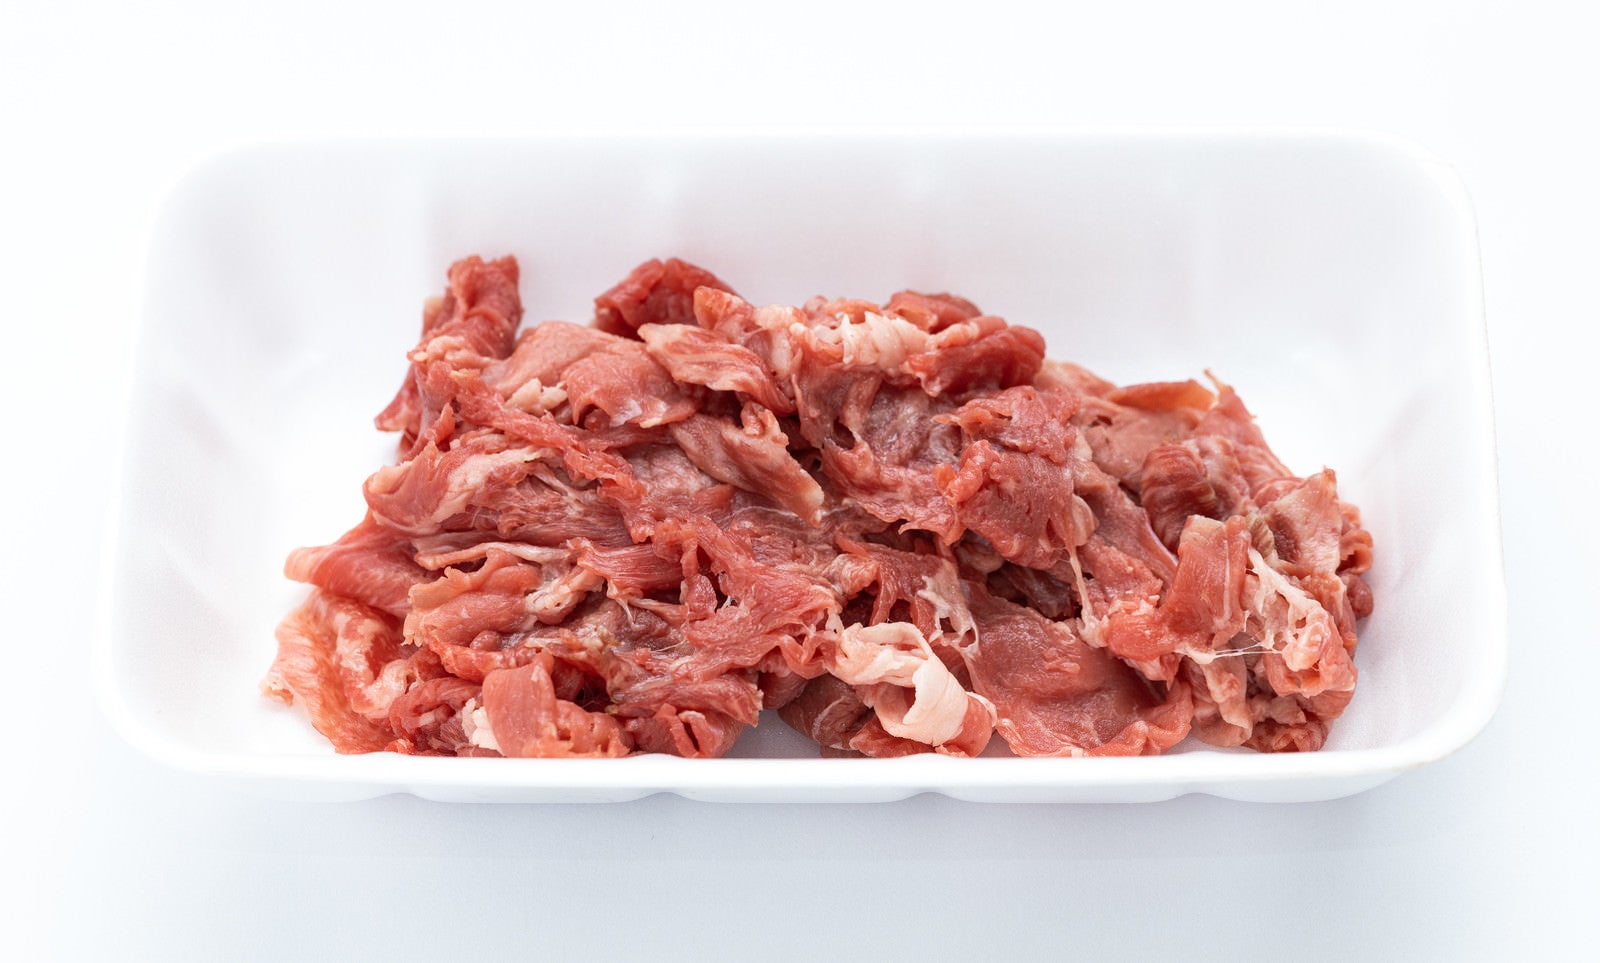 「横向き上から見たトレー入り細切れ肉」の写真